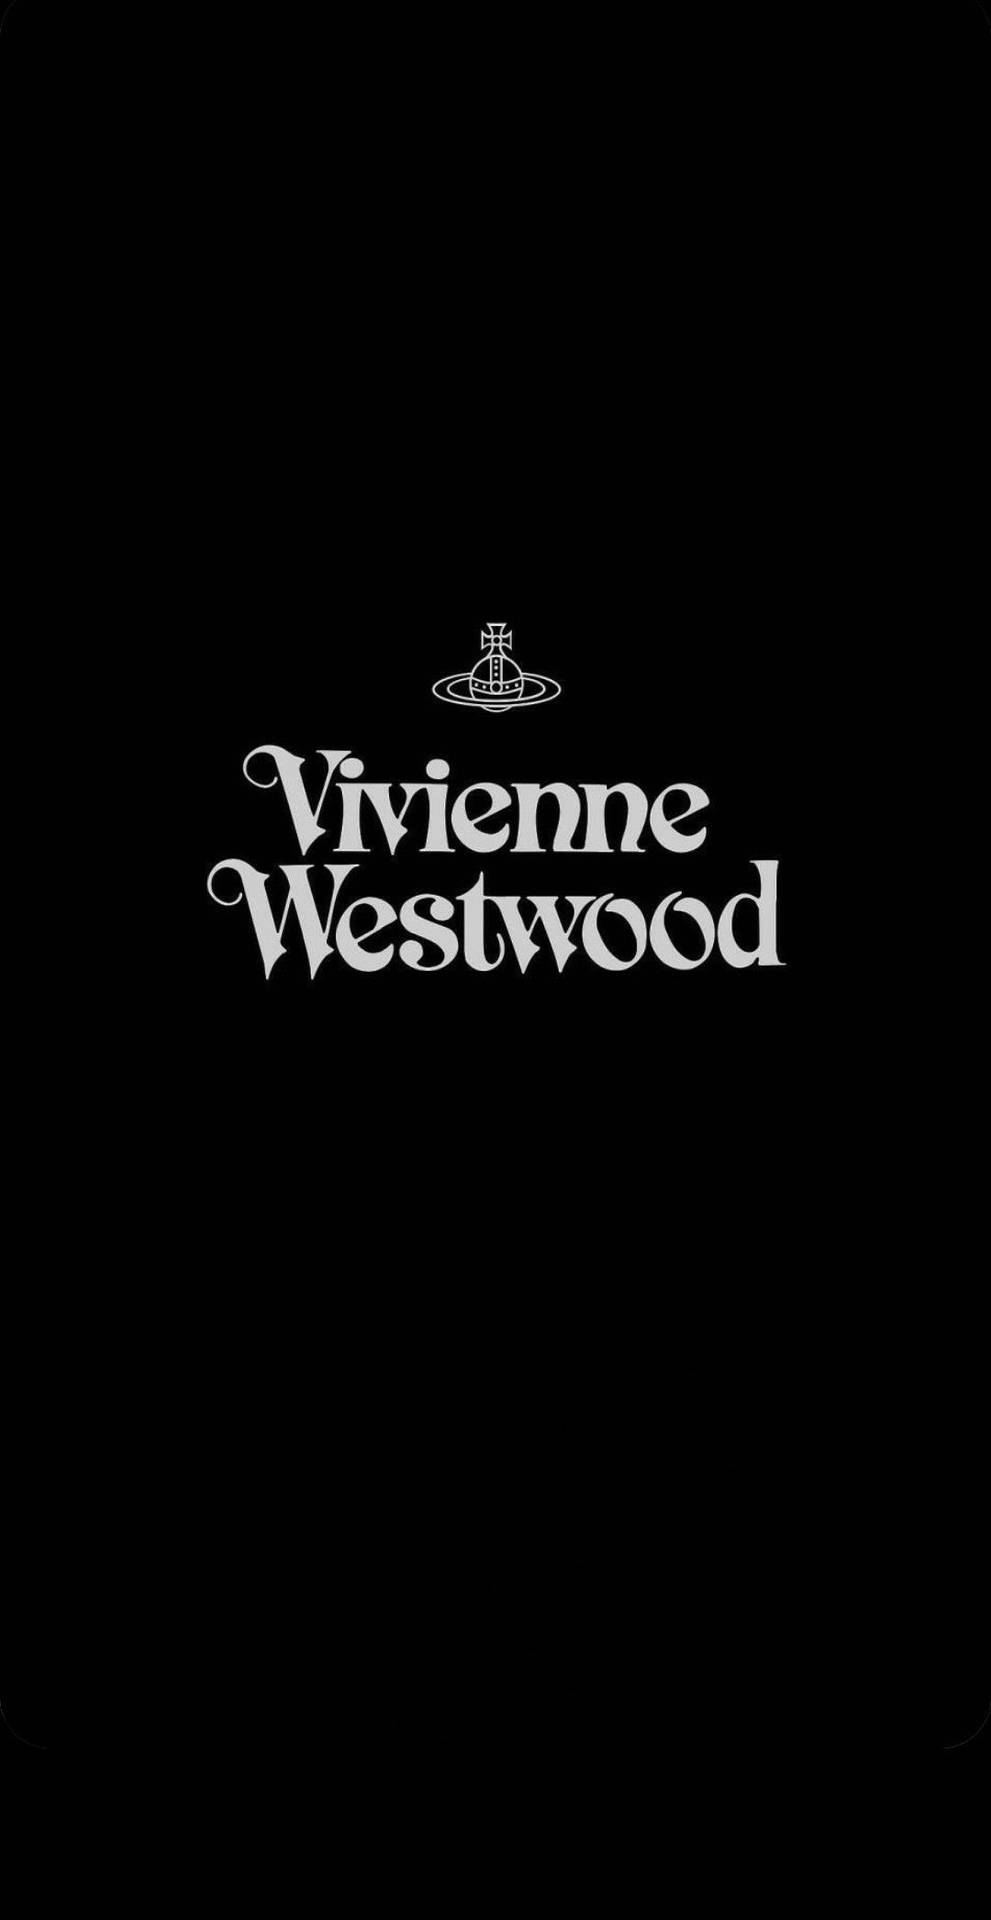 Free Vivienne Westwood Wallpaper Downloads, [100+] Vivienne 